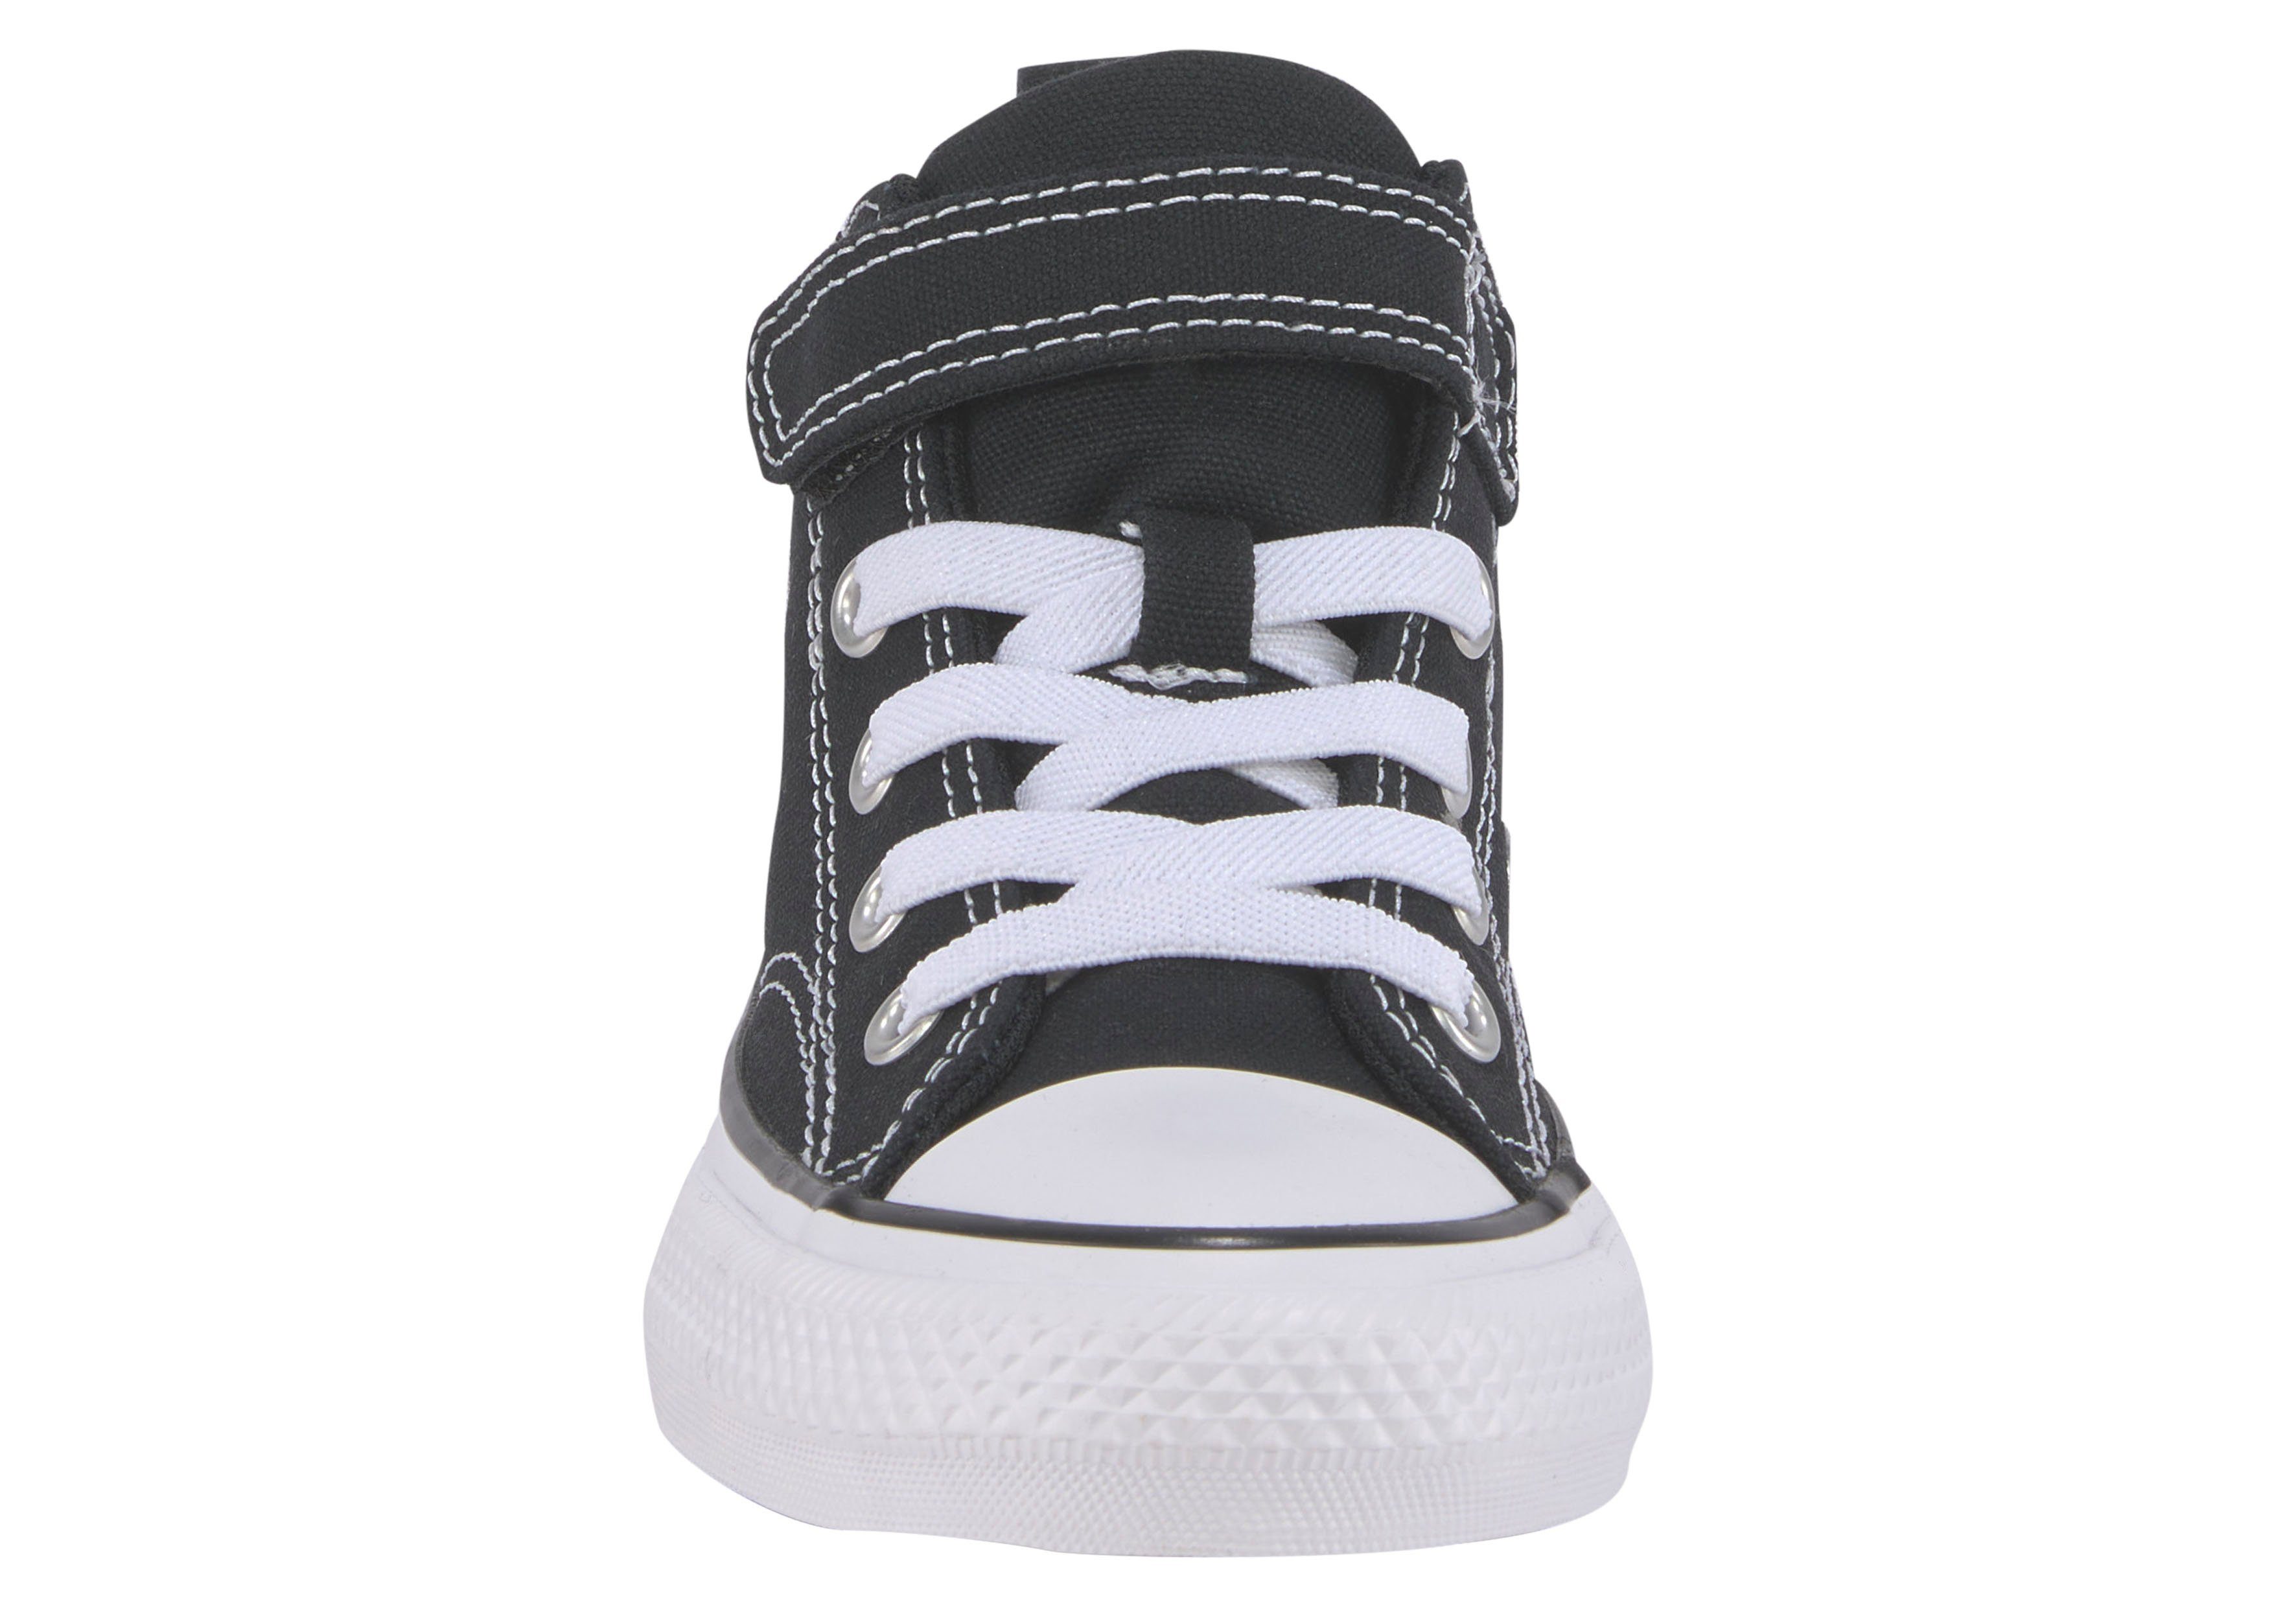 STREET Converse TAYLOR STAR schwarz-weiß ALL MALDEN Sneaker CHUCK